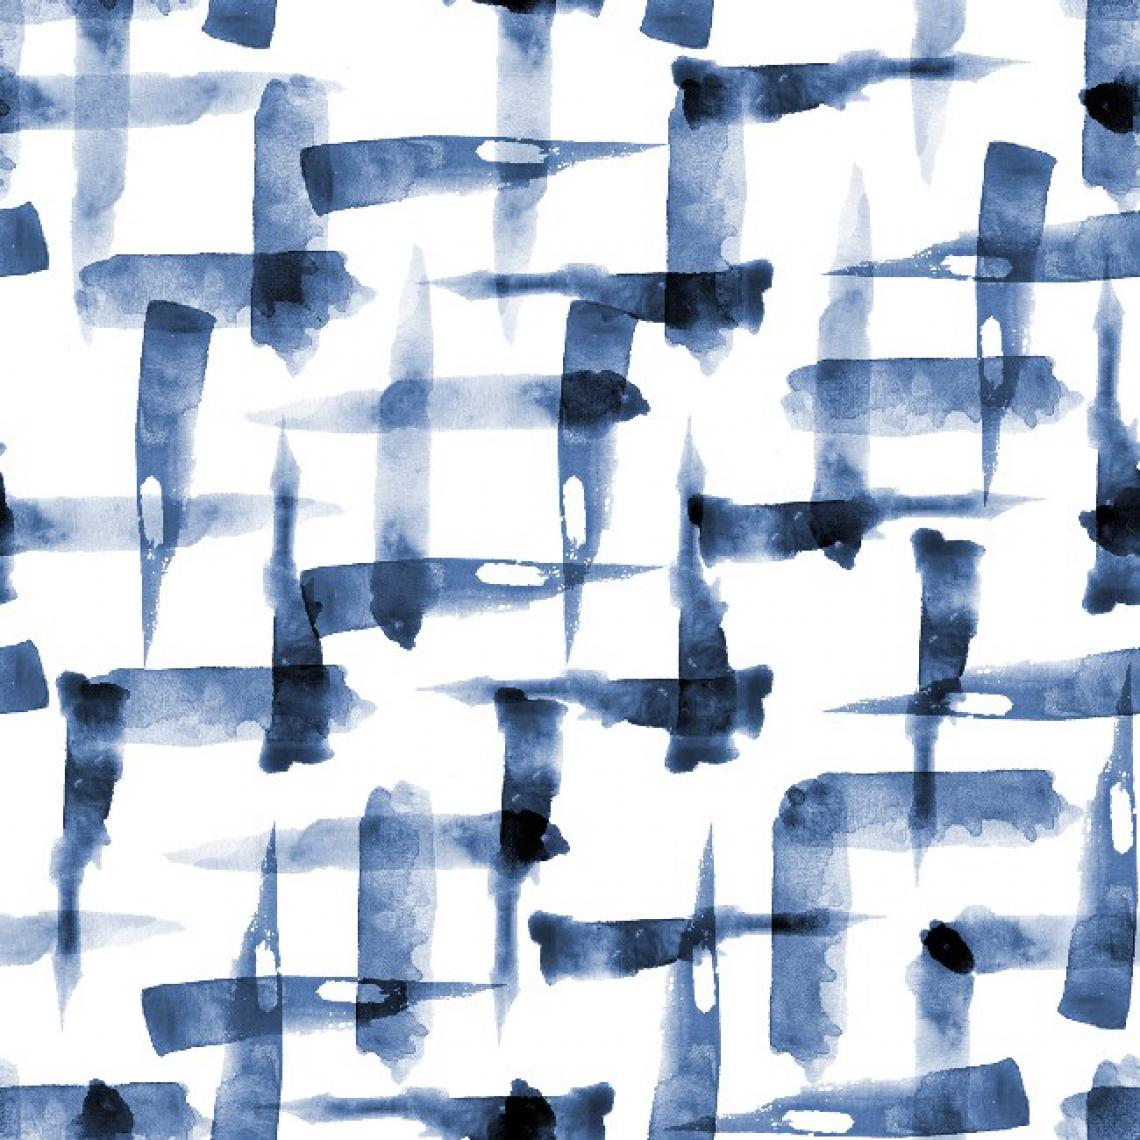 Homemania - HOMEMANIA Tapis Imprimé Blue Watercolor - Géométrique - Décoration de Maison - Antidérapant - Pour Salon, séjour, chambre à coucher - Multicolore en Polyester, Coton, 80 x 150 cm - Tapis